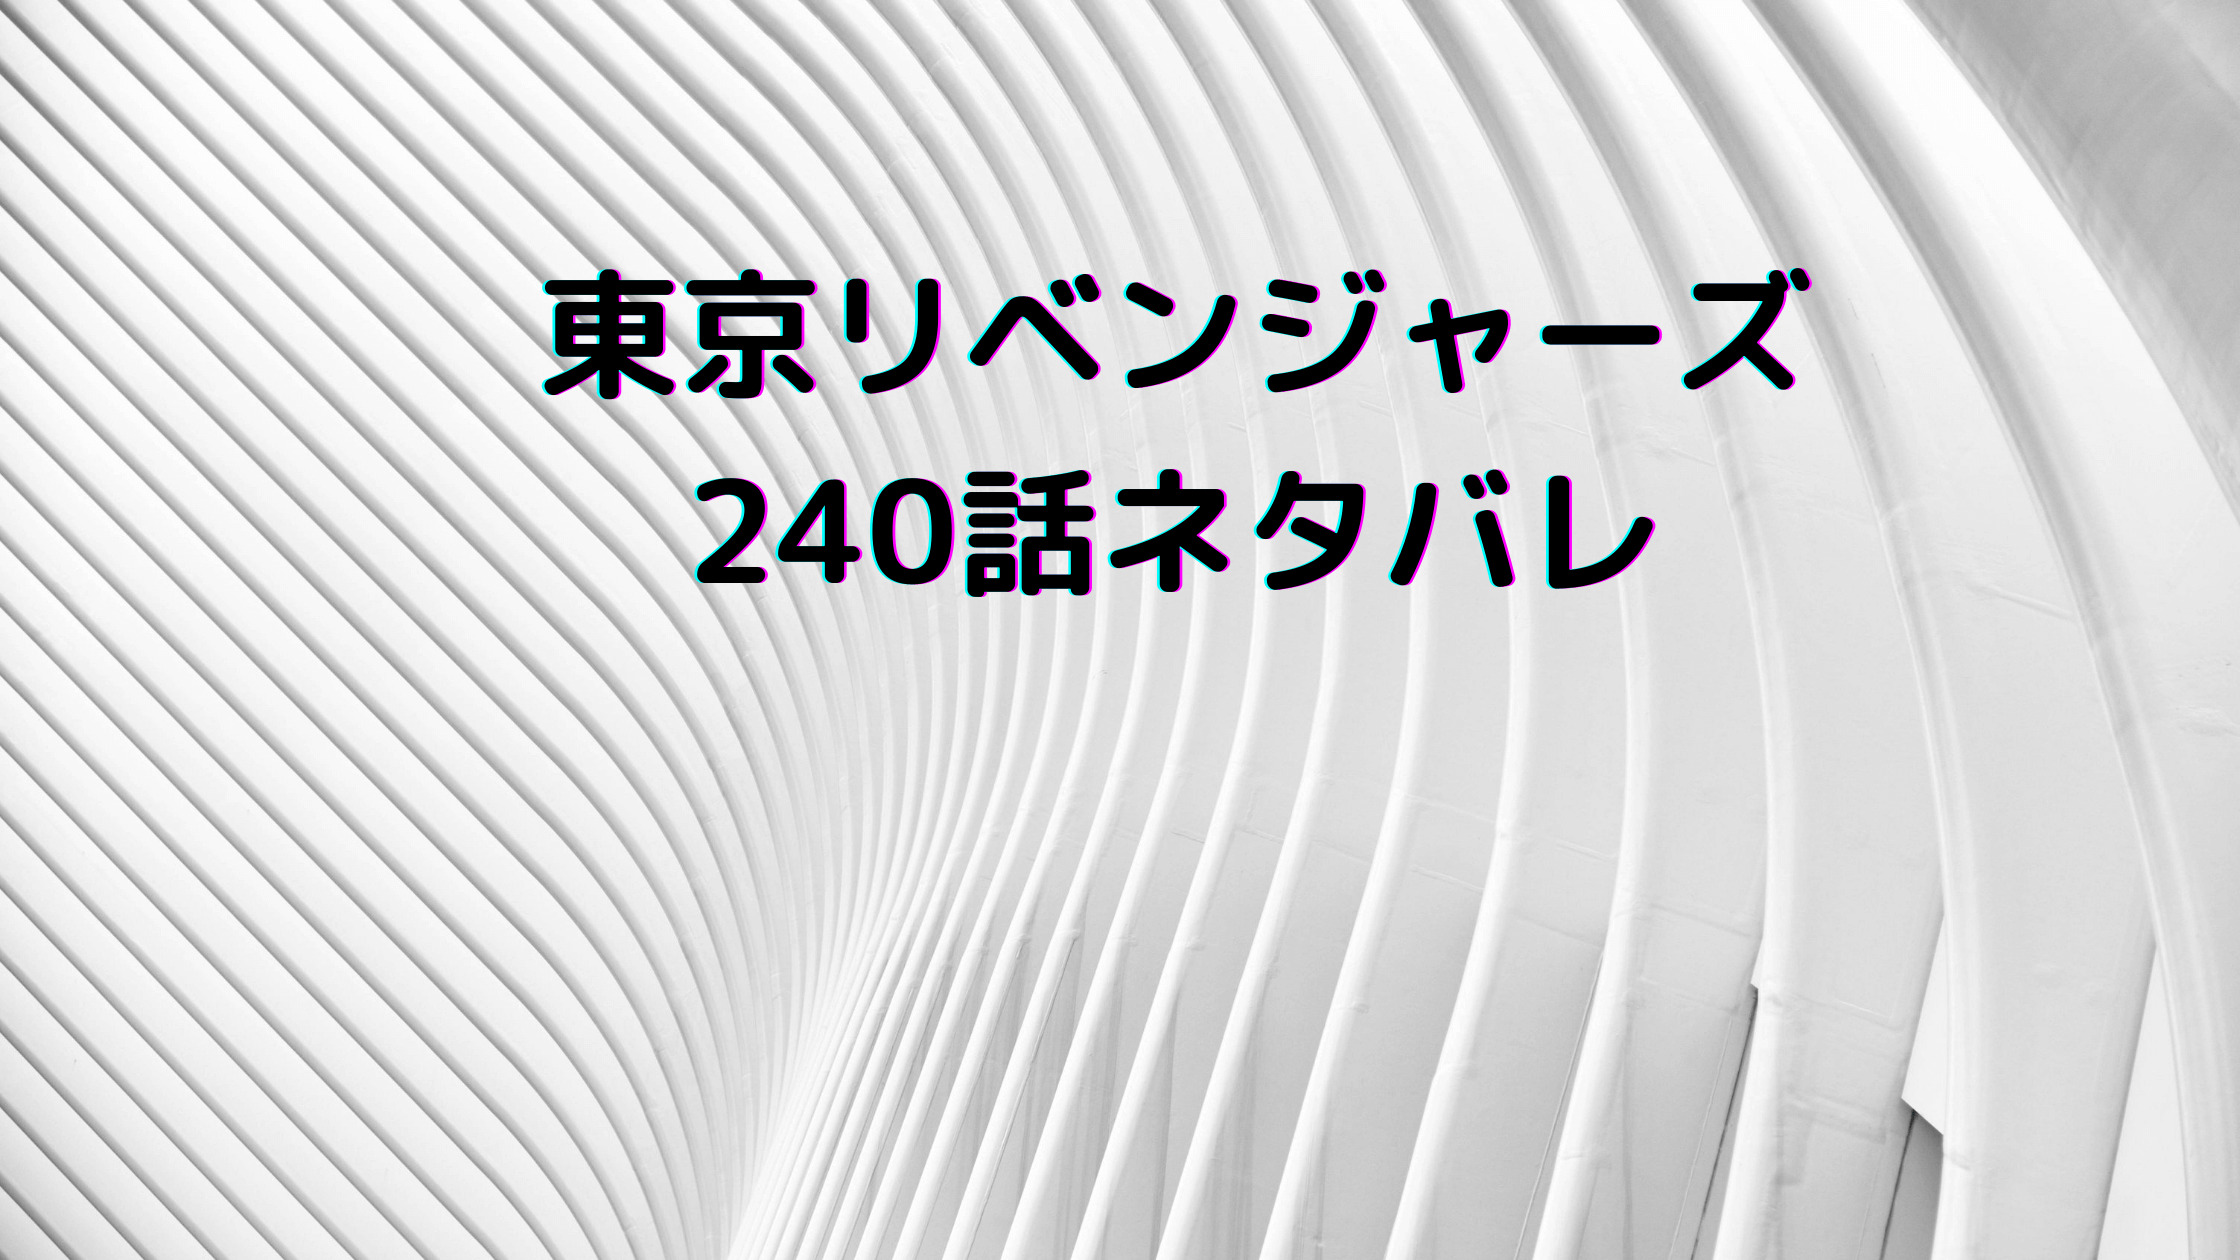 東京卍リベンジャーズ 240話ネタバレあらすじ最新速報 千咒が協力する可能性 セイカテン